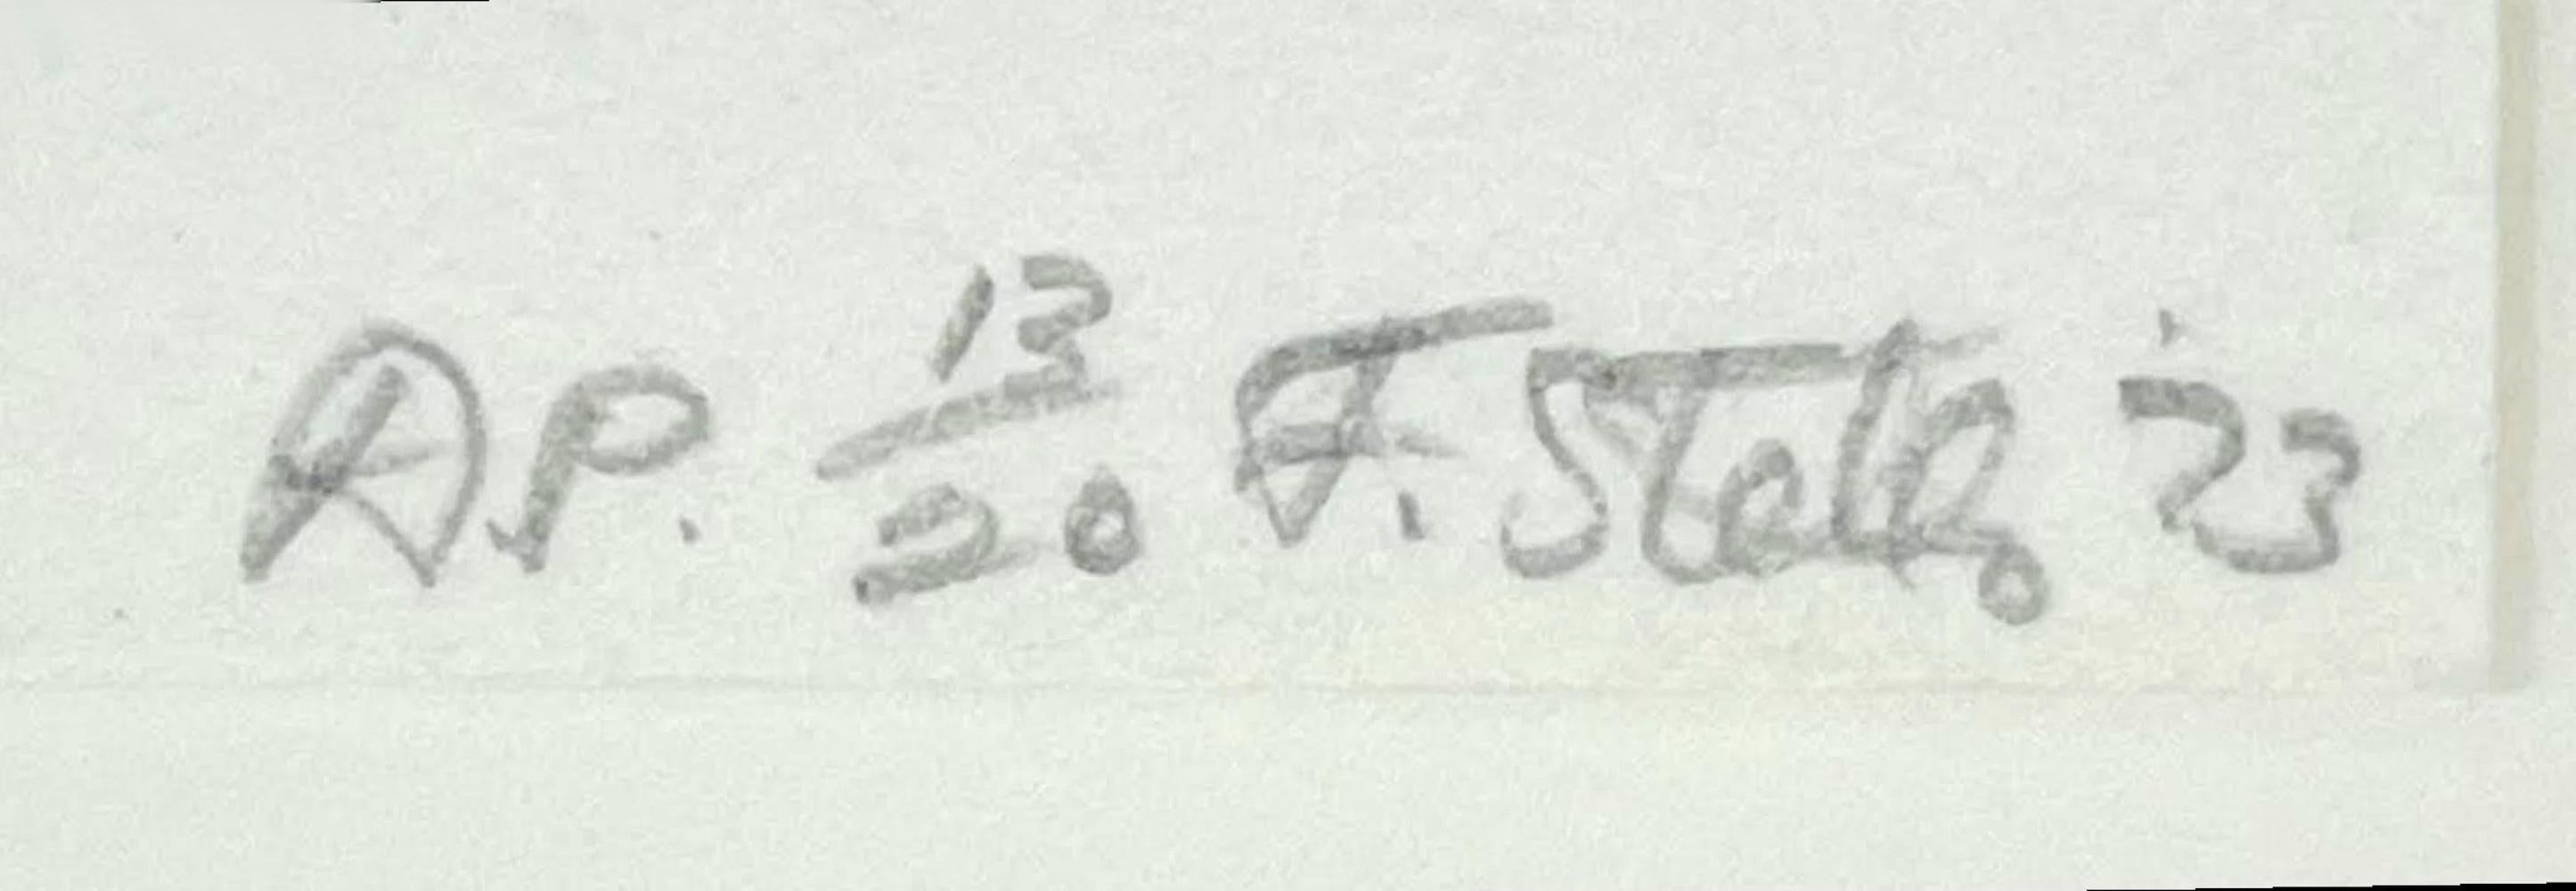 Frank Stella
Les Indes Galantes V (Axsom 90), 1973
Lithographie auf J. Green Büttenpapier
Mit Bleistift signiert, datiert und nummeriert AP 13/20 von Frank Stella auf der Vorderseite
16 × 22 Zoll
Ungerahmt
Bei dieser in London gedruckten